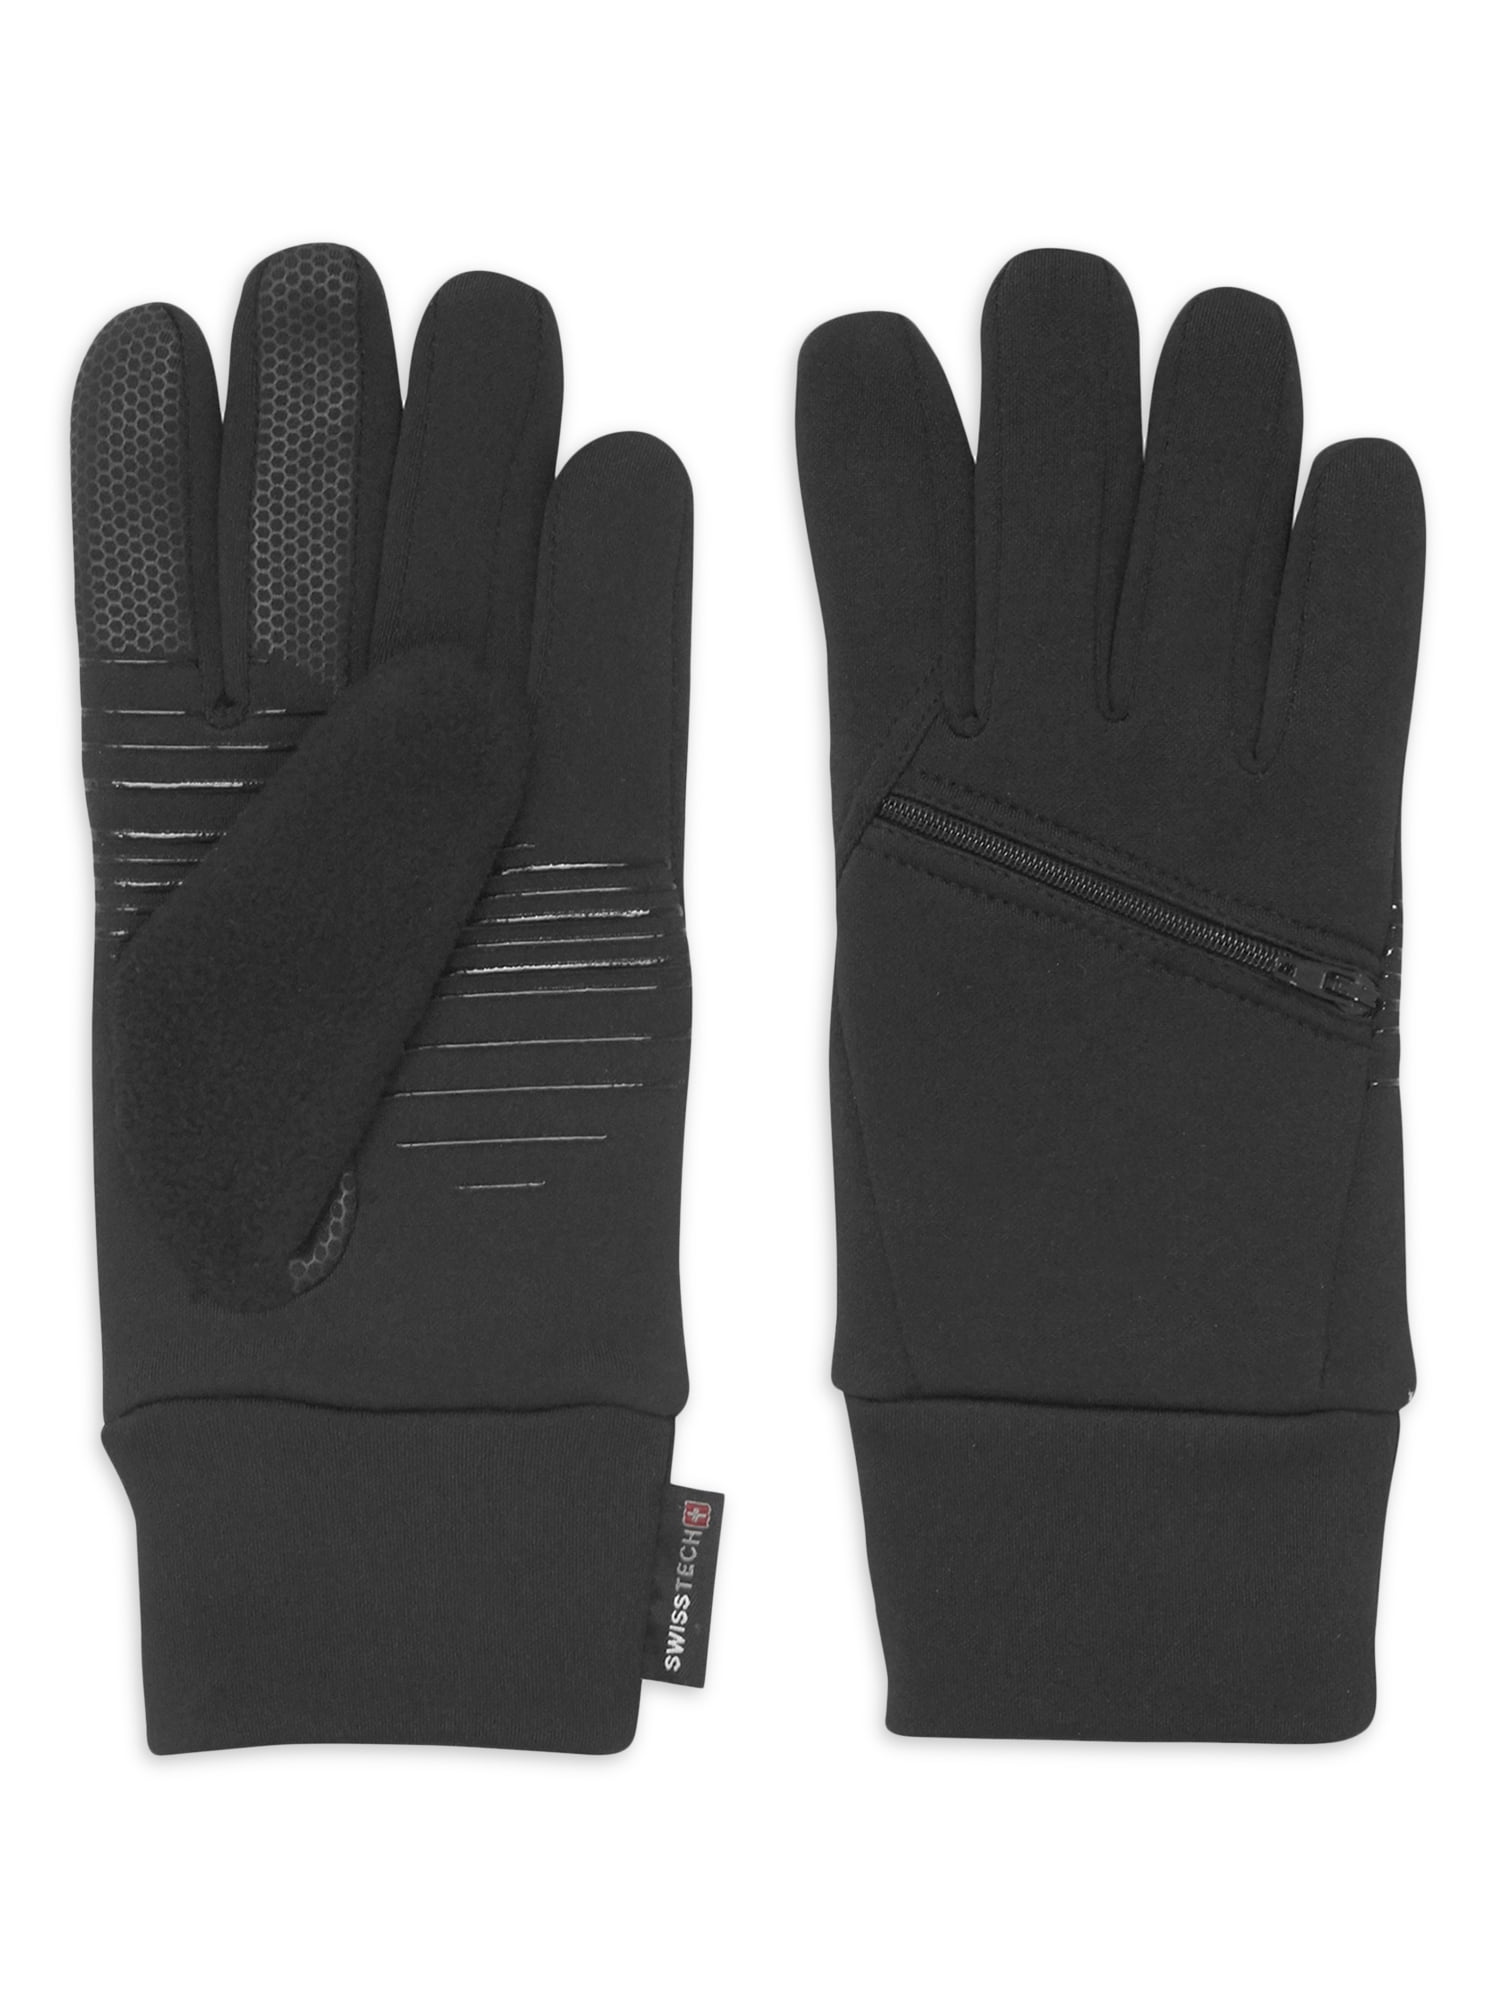 KingSize Men's Big & Tall Extra Large Work Gloves - Big - L, Black Brown